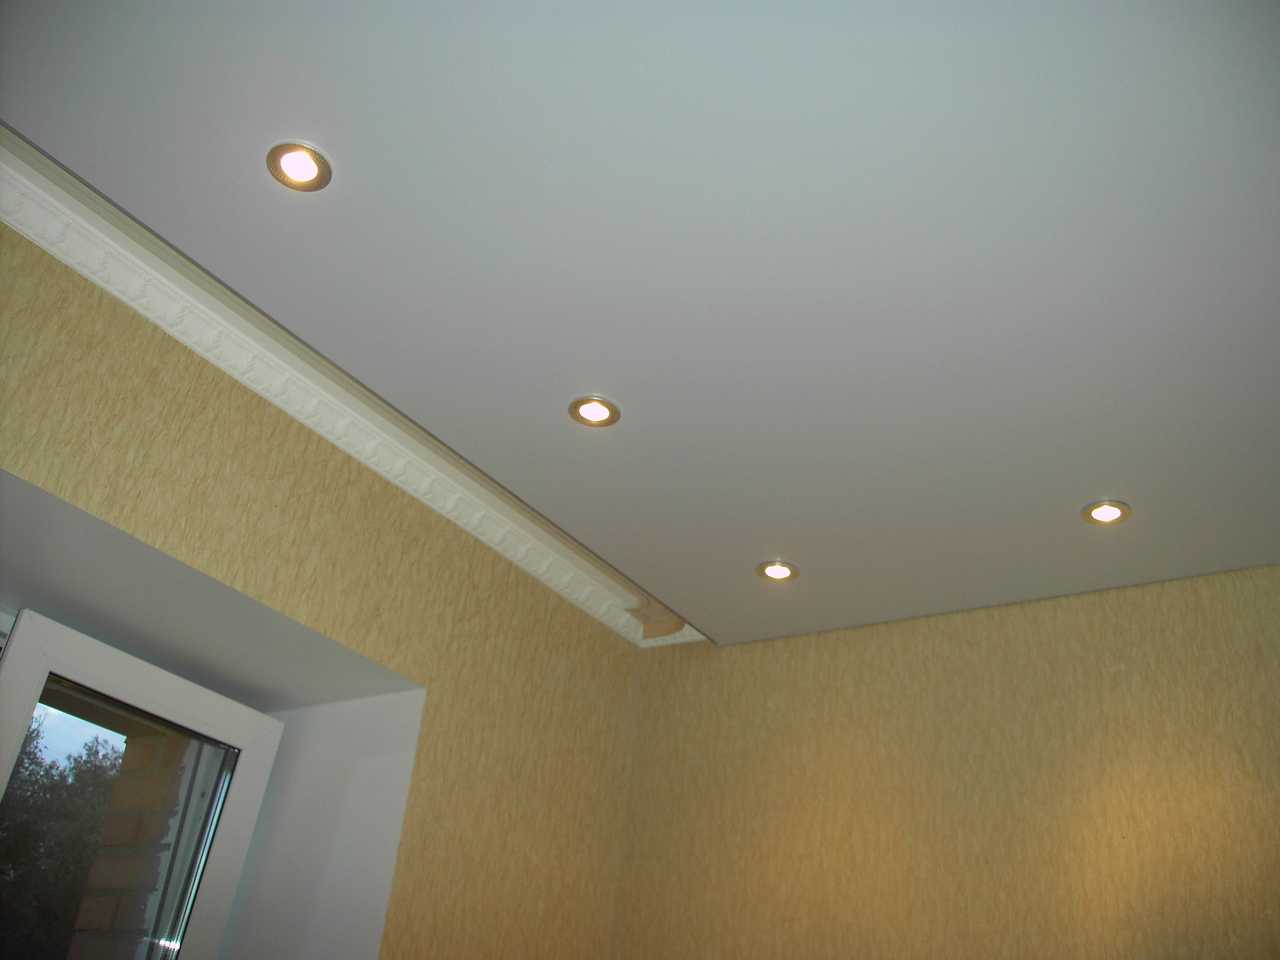 Встраиваемые светильники (83 фото): квадратные модели, встроенные в стену и в пол, с датчиком движения, идеи для лестницы